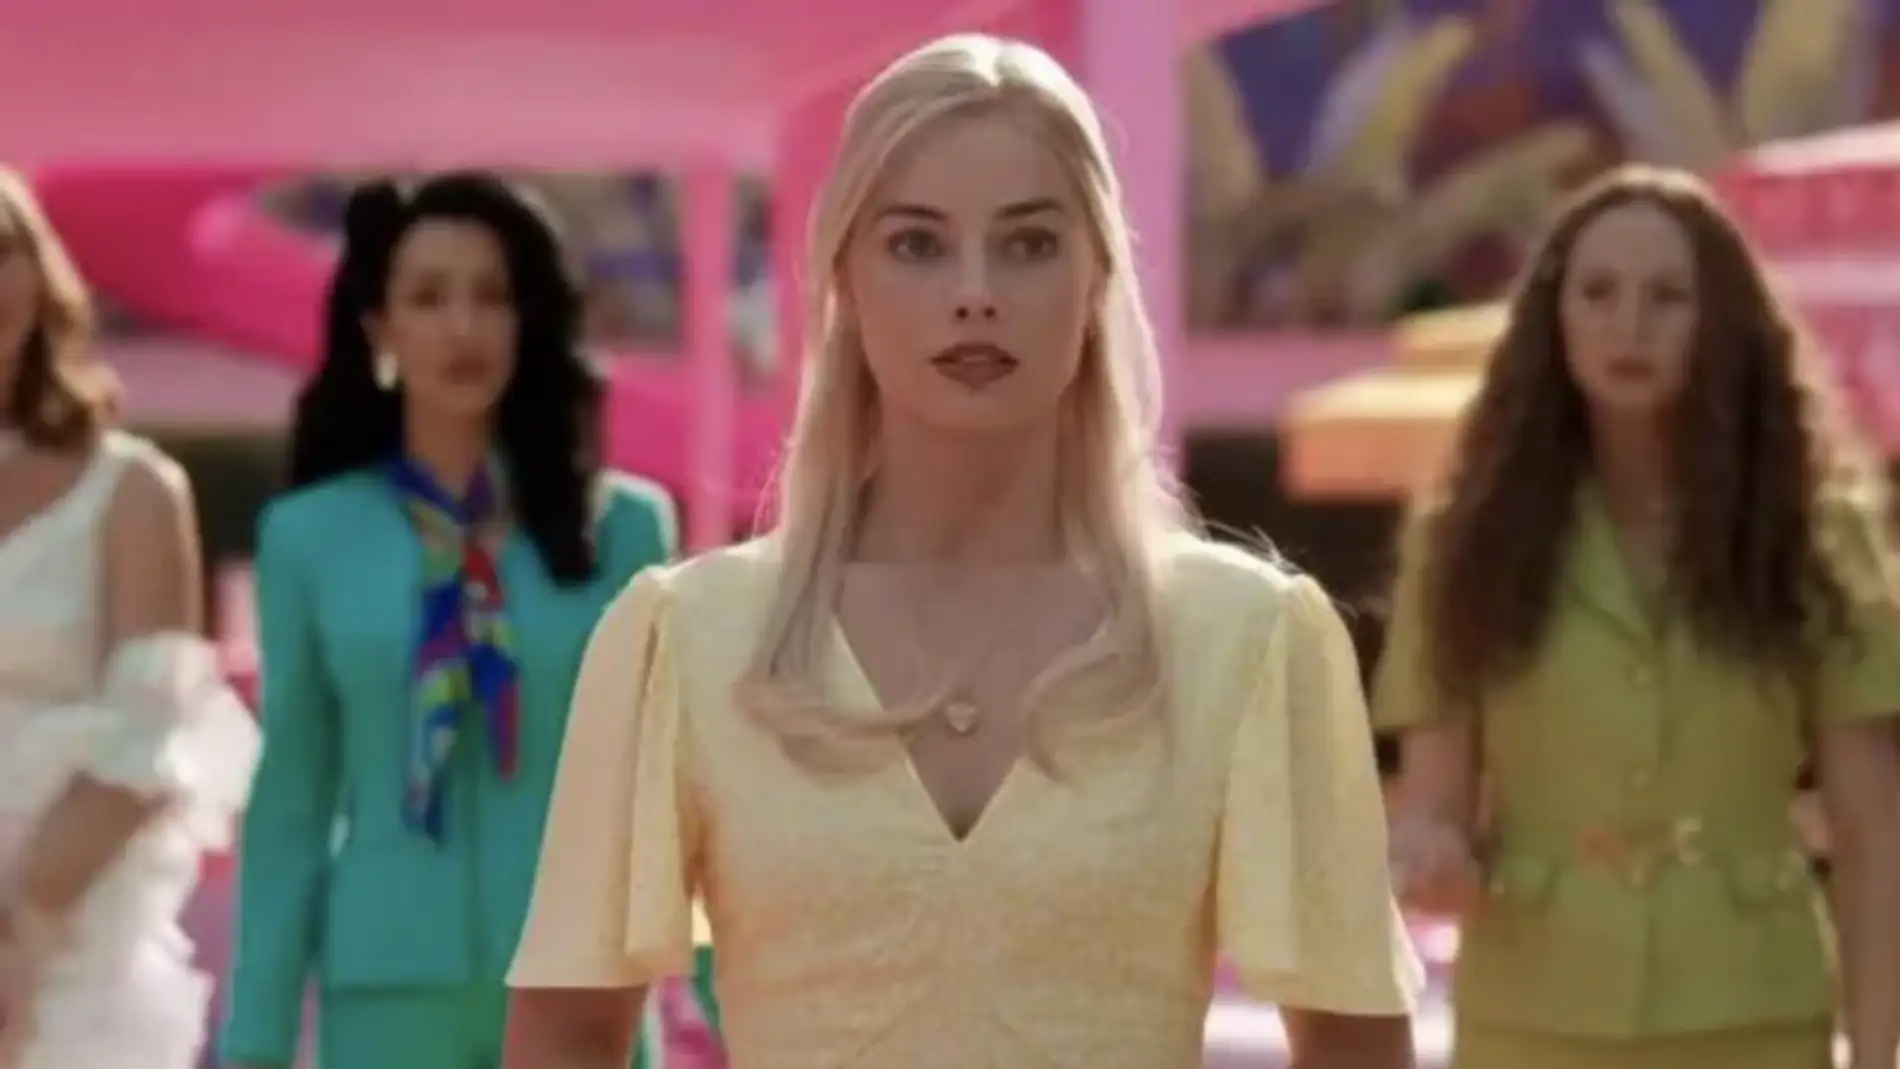 El vestido amarillo del cambio tiene un gran significado dentro de la película.